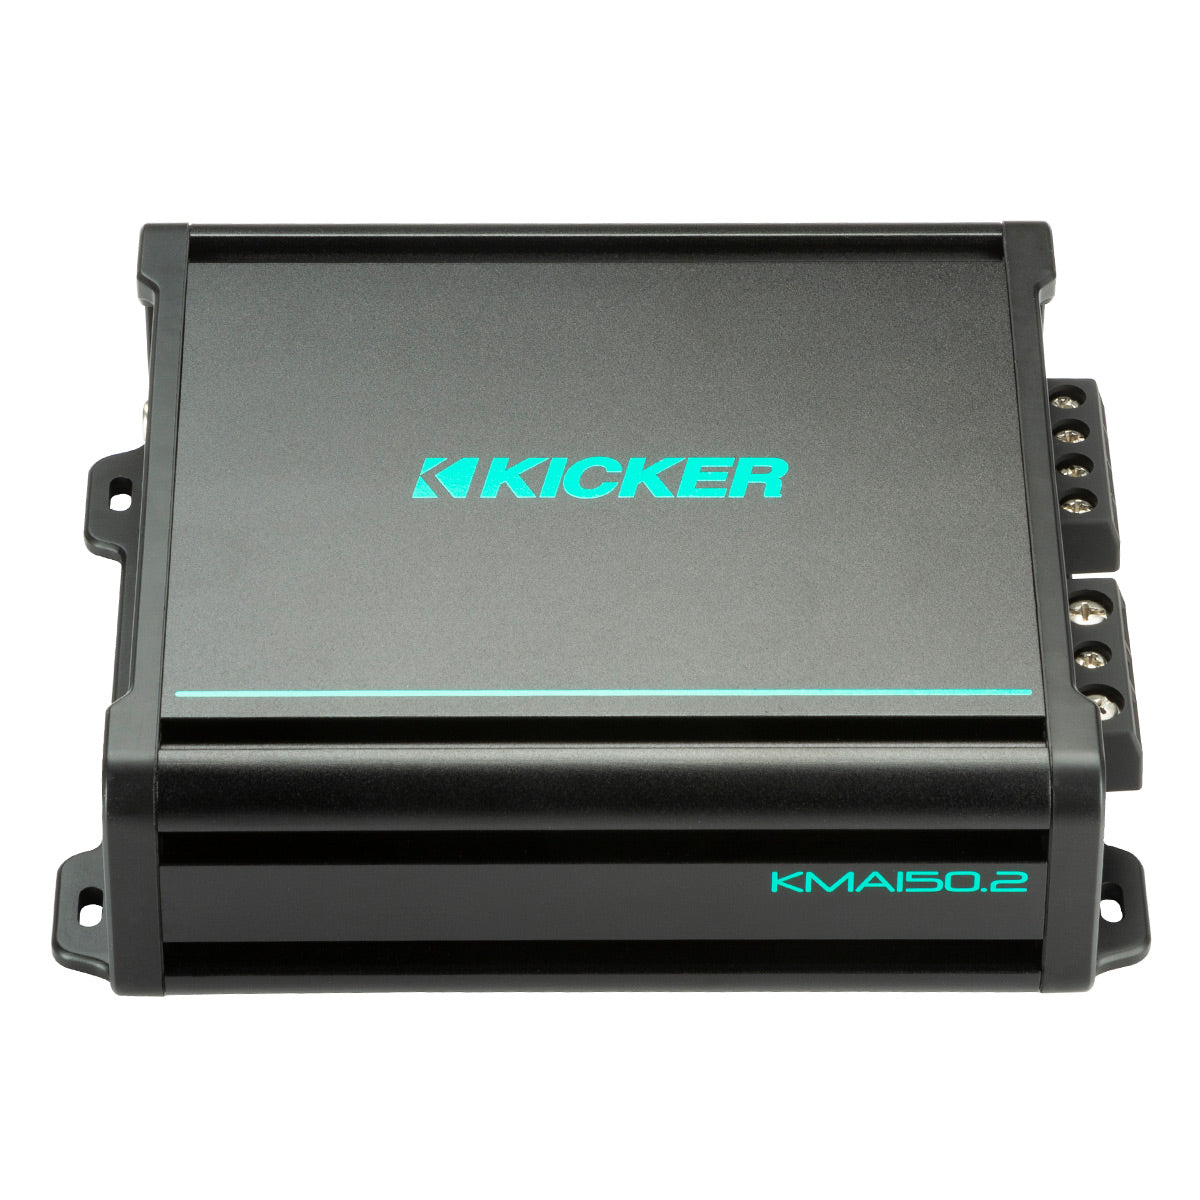 Kicker KMA150.2 75 Watts x 2 2-Channel Marine Full-Range Amplifier